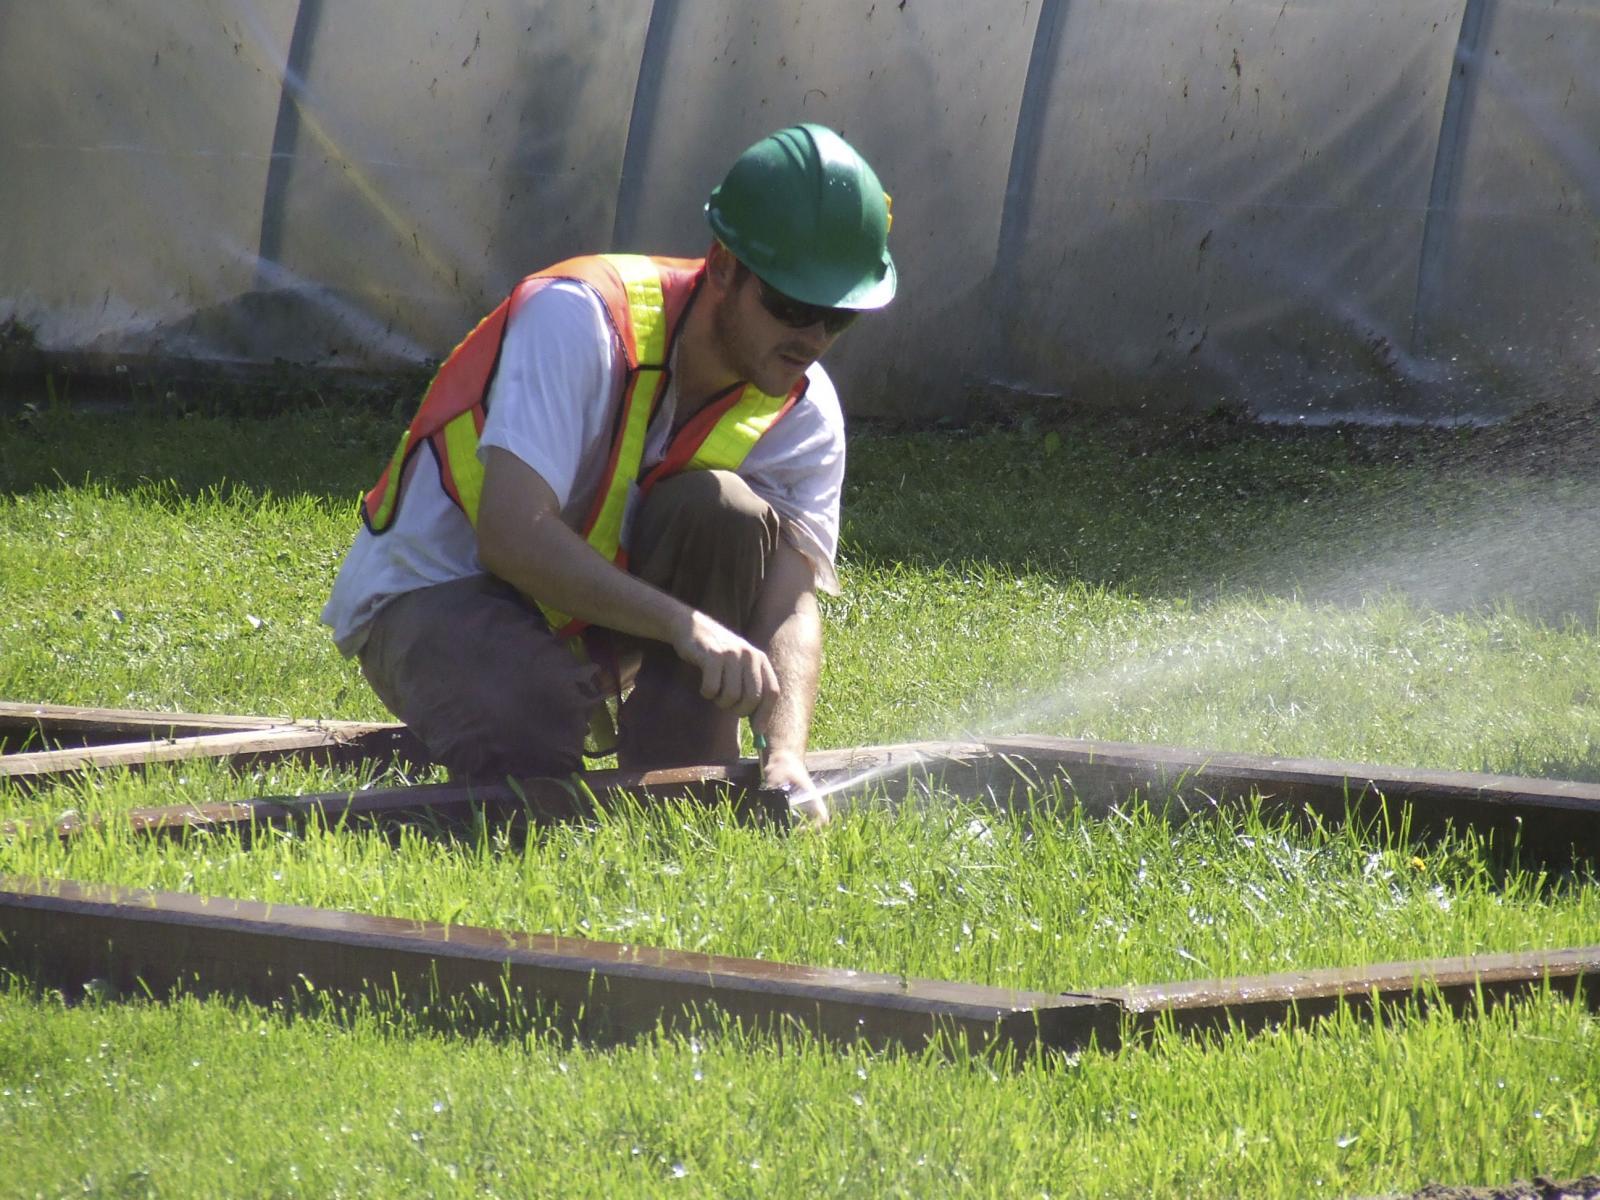 Certified worker testing a sprinkler system